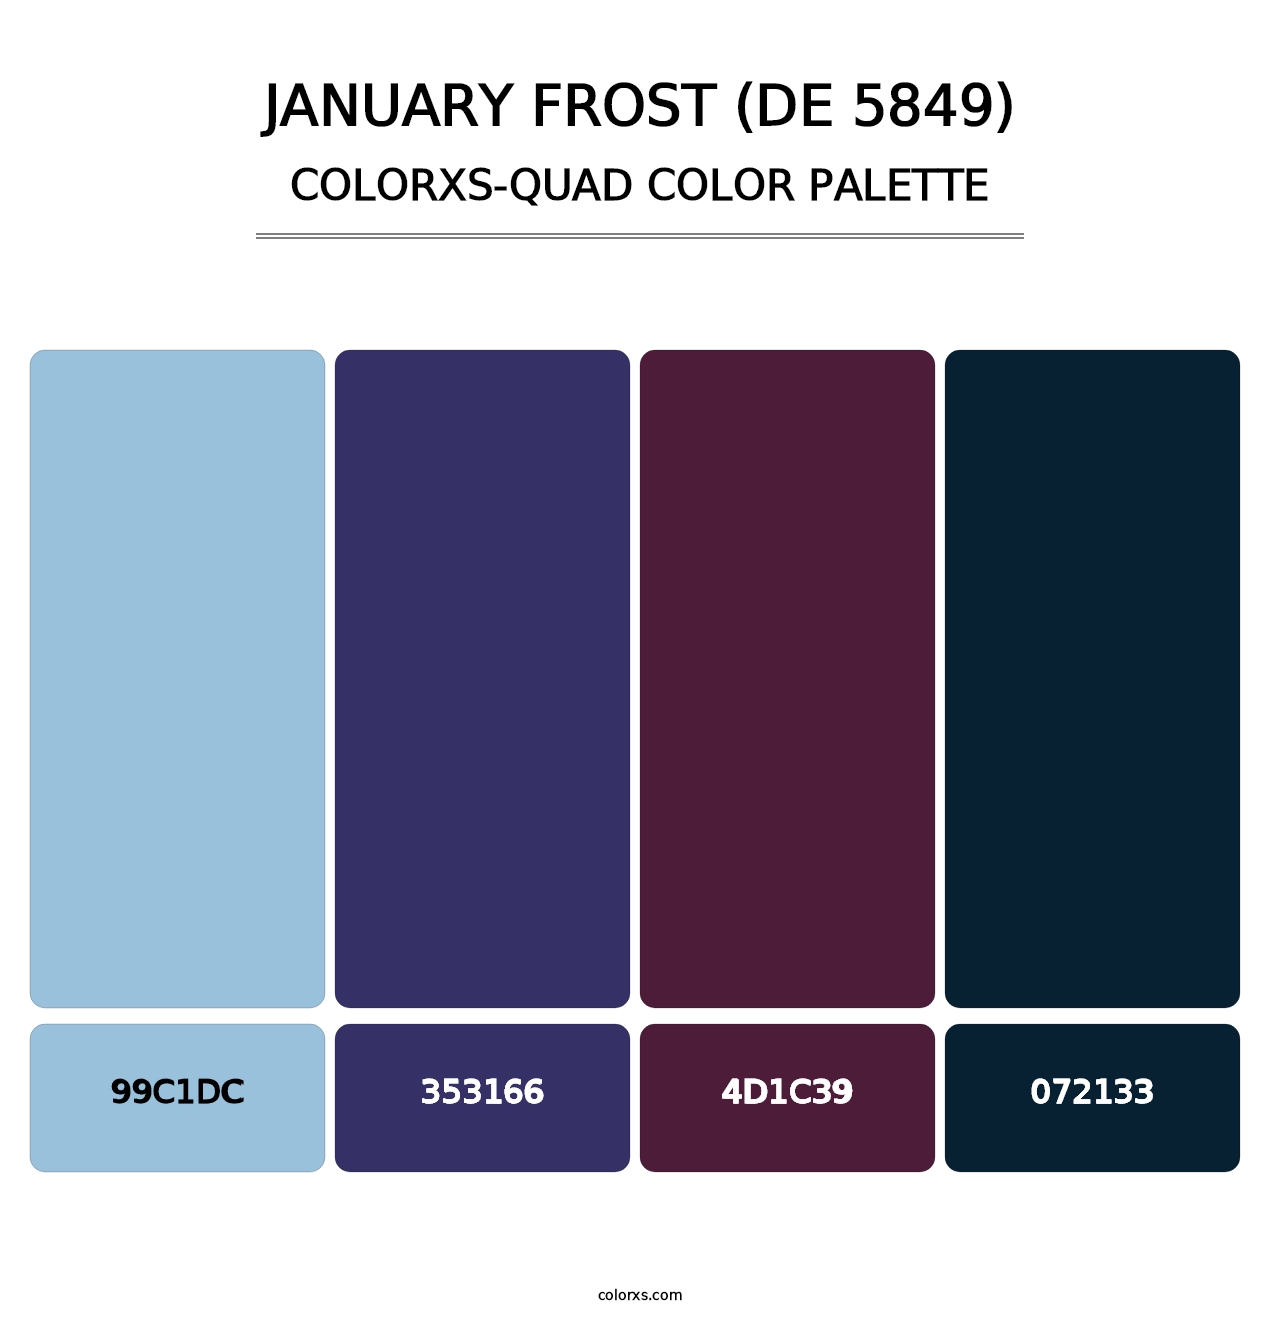 January Frost (DE 5849) - Colorxs Quad Palette